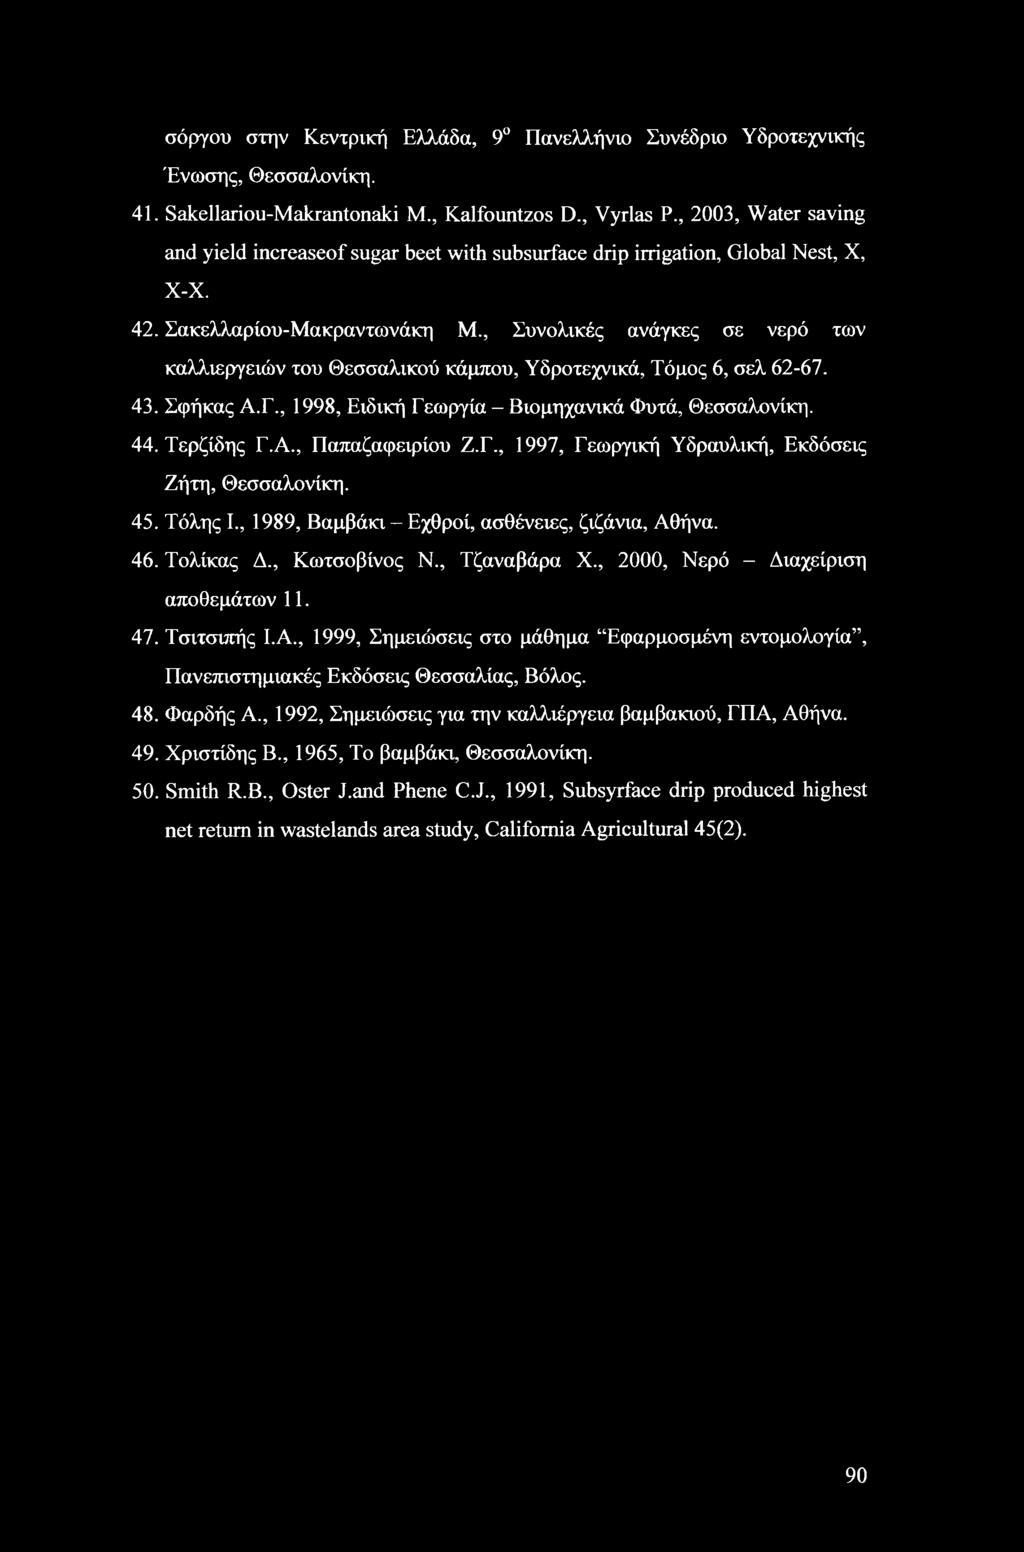 , Συνολικές ανάγκες σε νερό των καλλιεργειών του Θεσσαλικού κάμπου, Υδροτεχνικά, Τόμος 6, σελ 62-67. 43. Σφήκας Α.Γ., 1998, Ειδική Γεωργία - Βιομηχανικά Φυτά, Θεσσαλονίκη. 44. Τερζίδης Γ.Α., Παπαζαφειρίου Ζ.